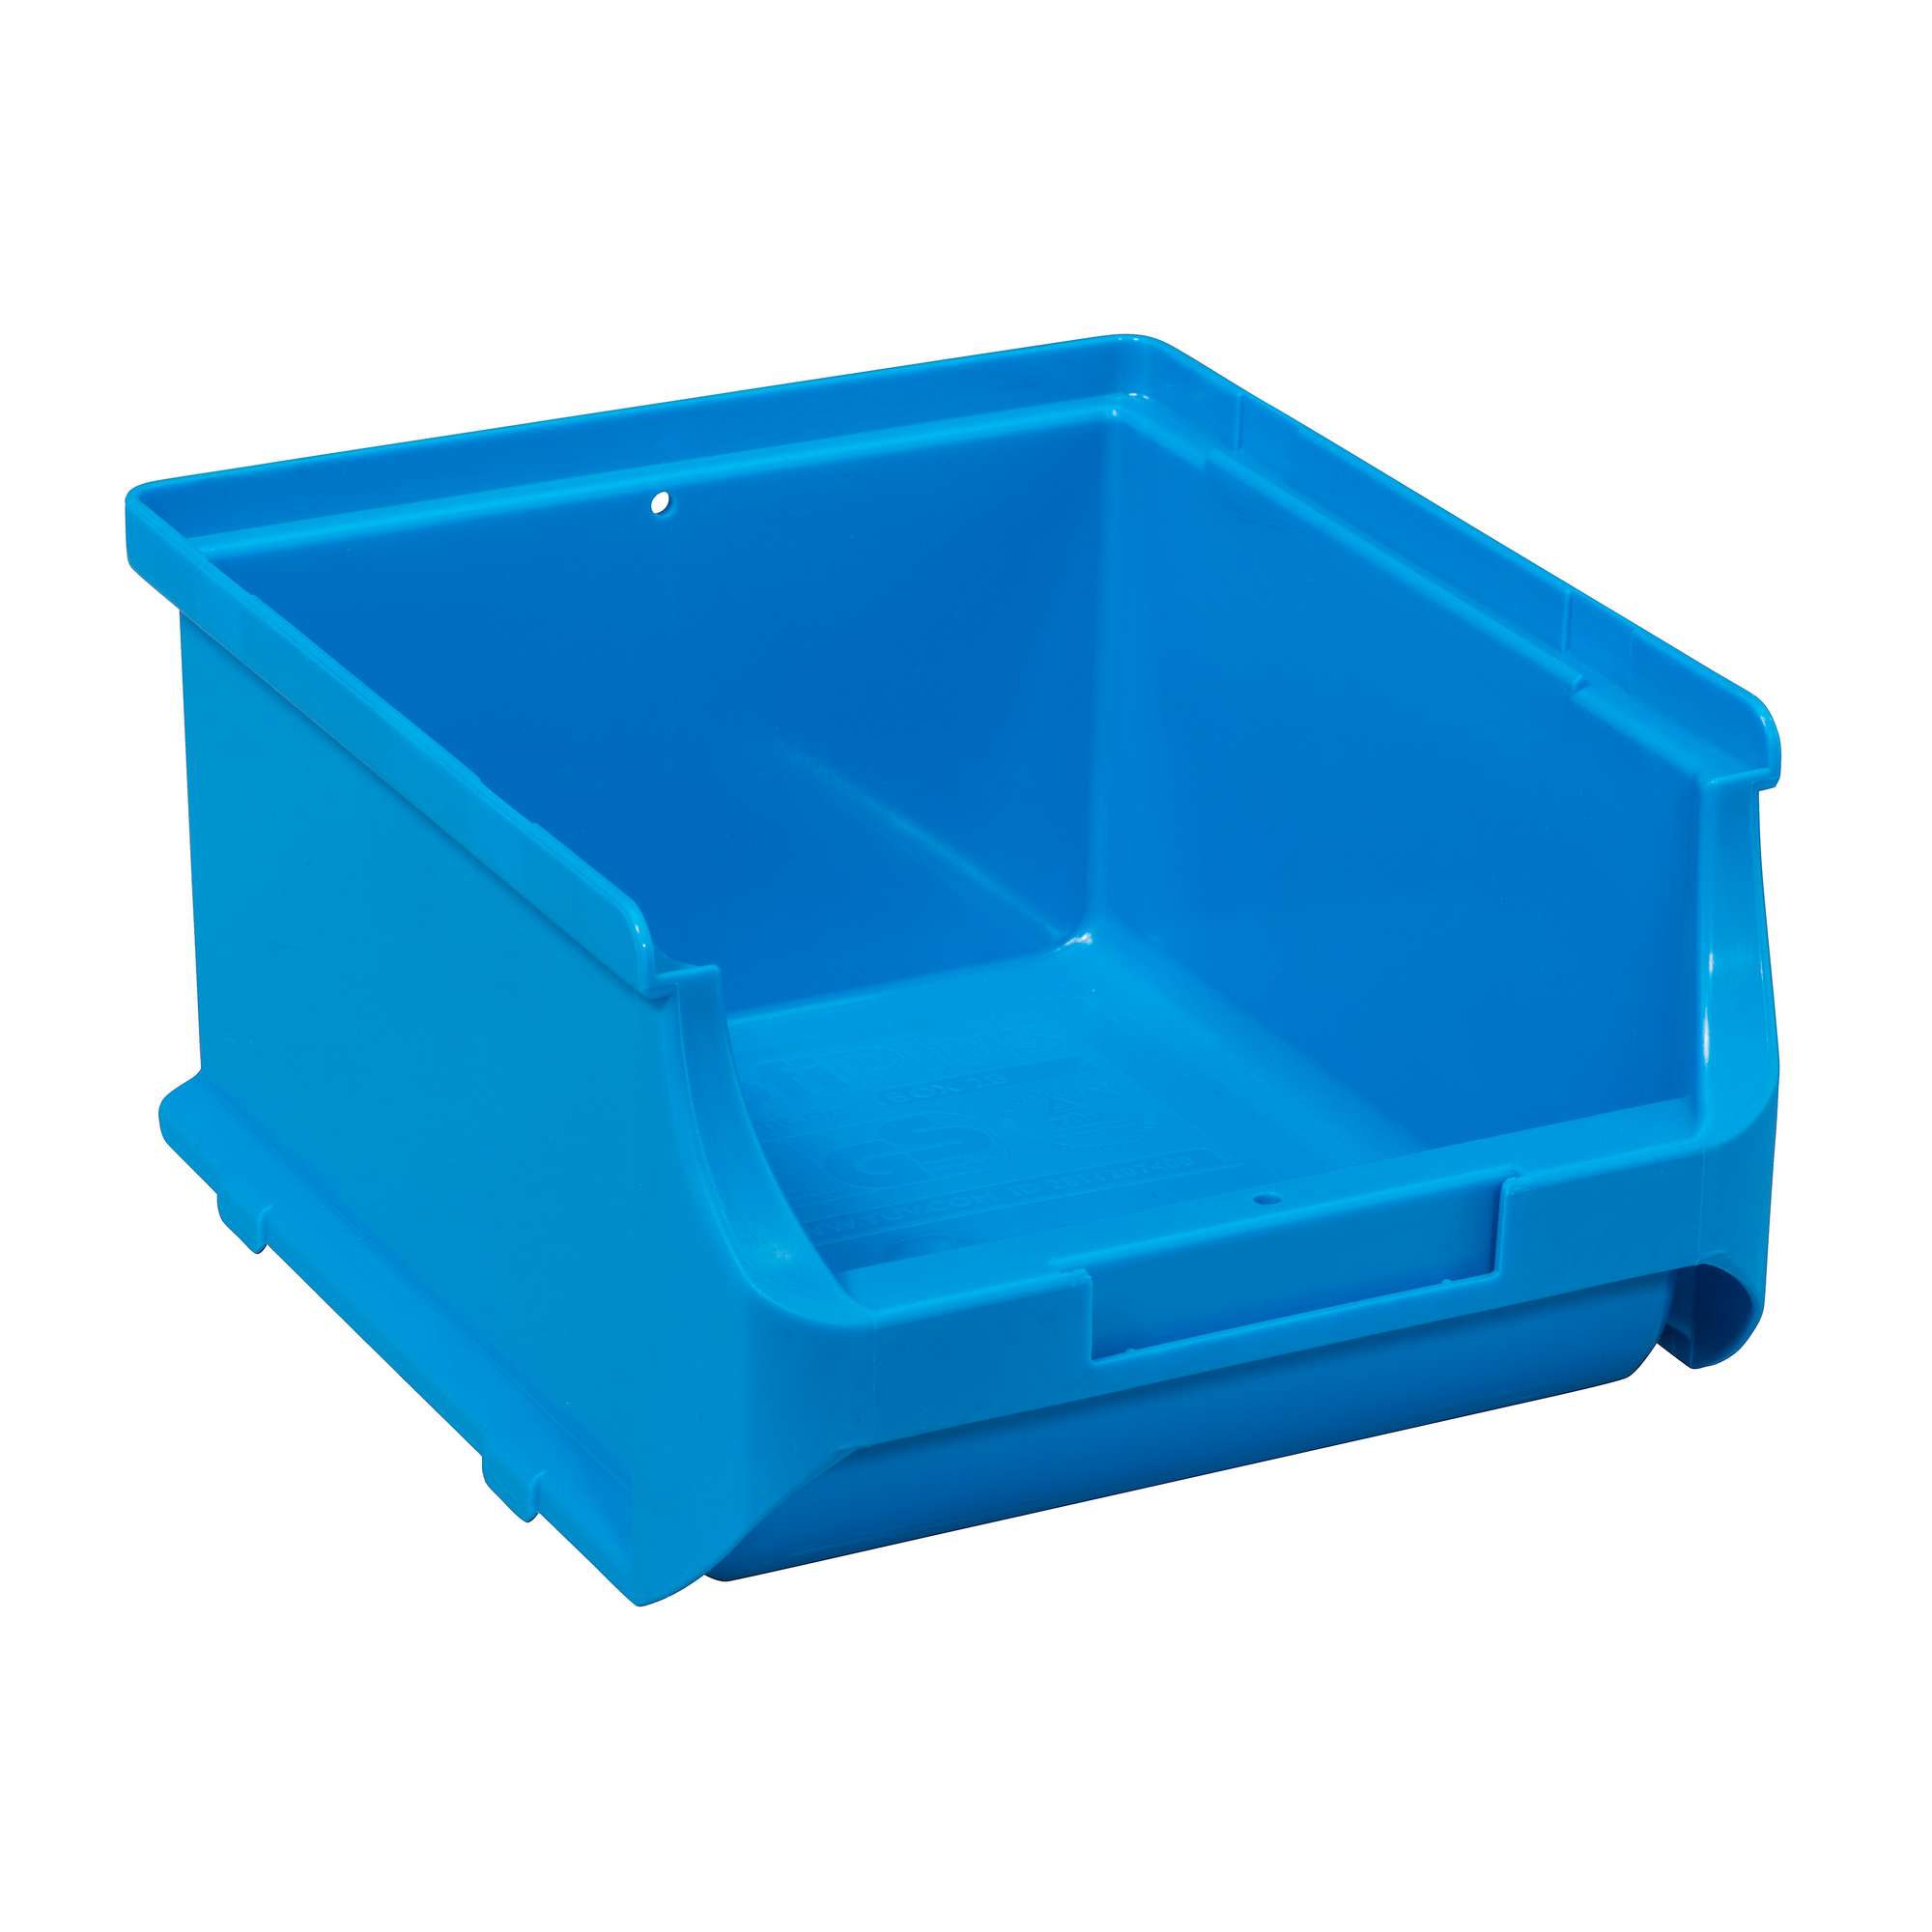 ProfiPlus Stapelsichtbox 'Box 2B' blau 16 x 13,7 x 8,2 cm + product picture